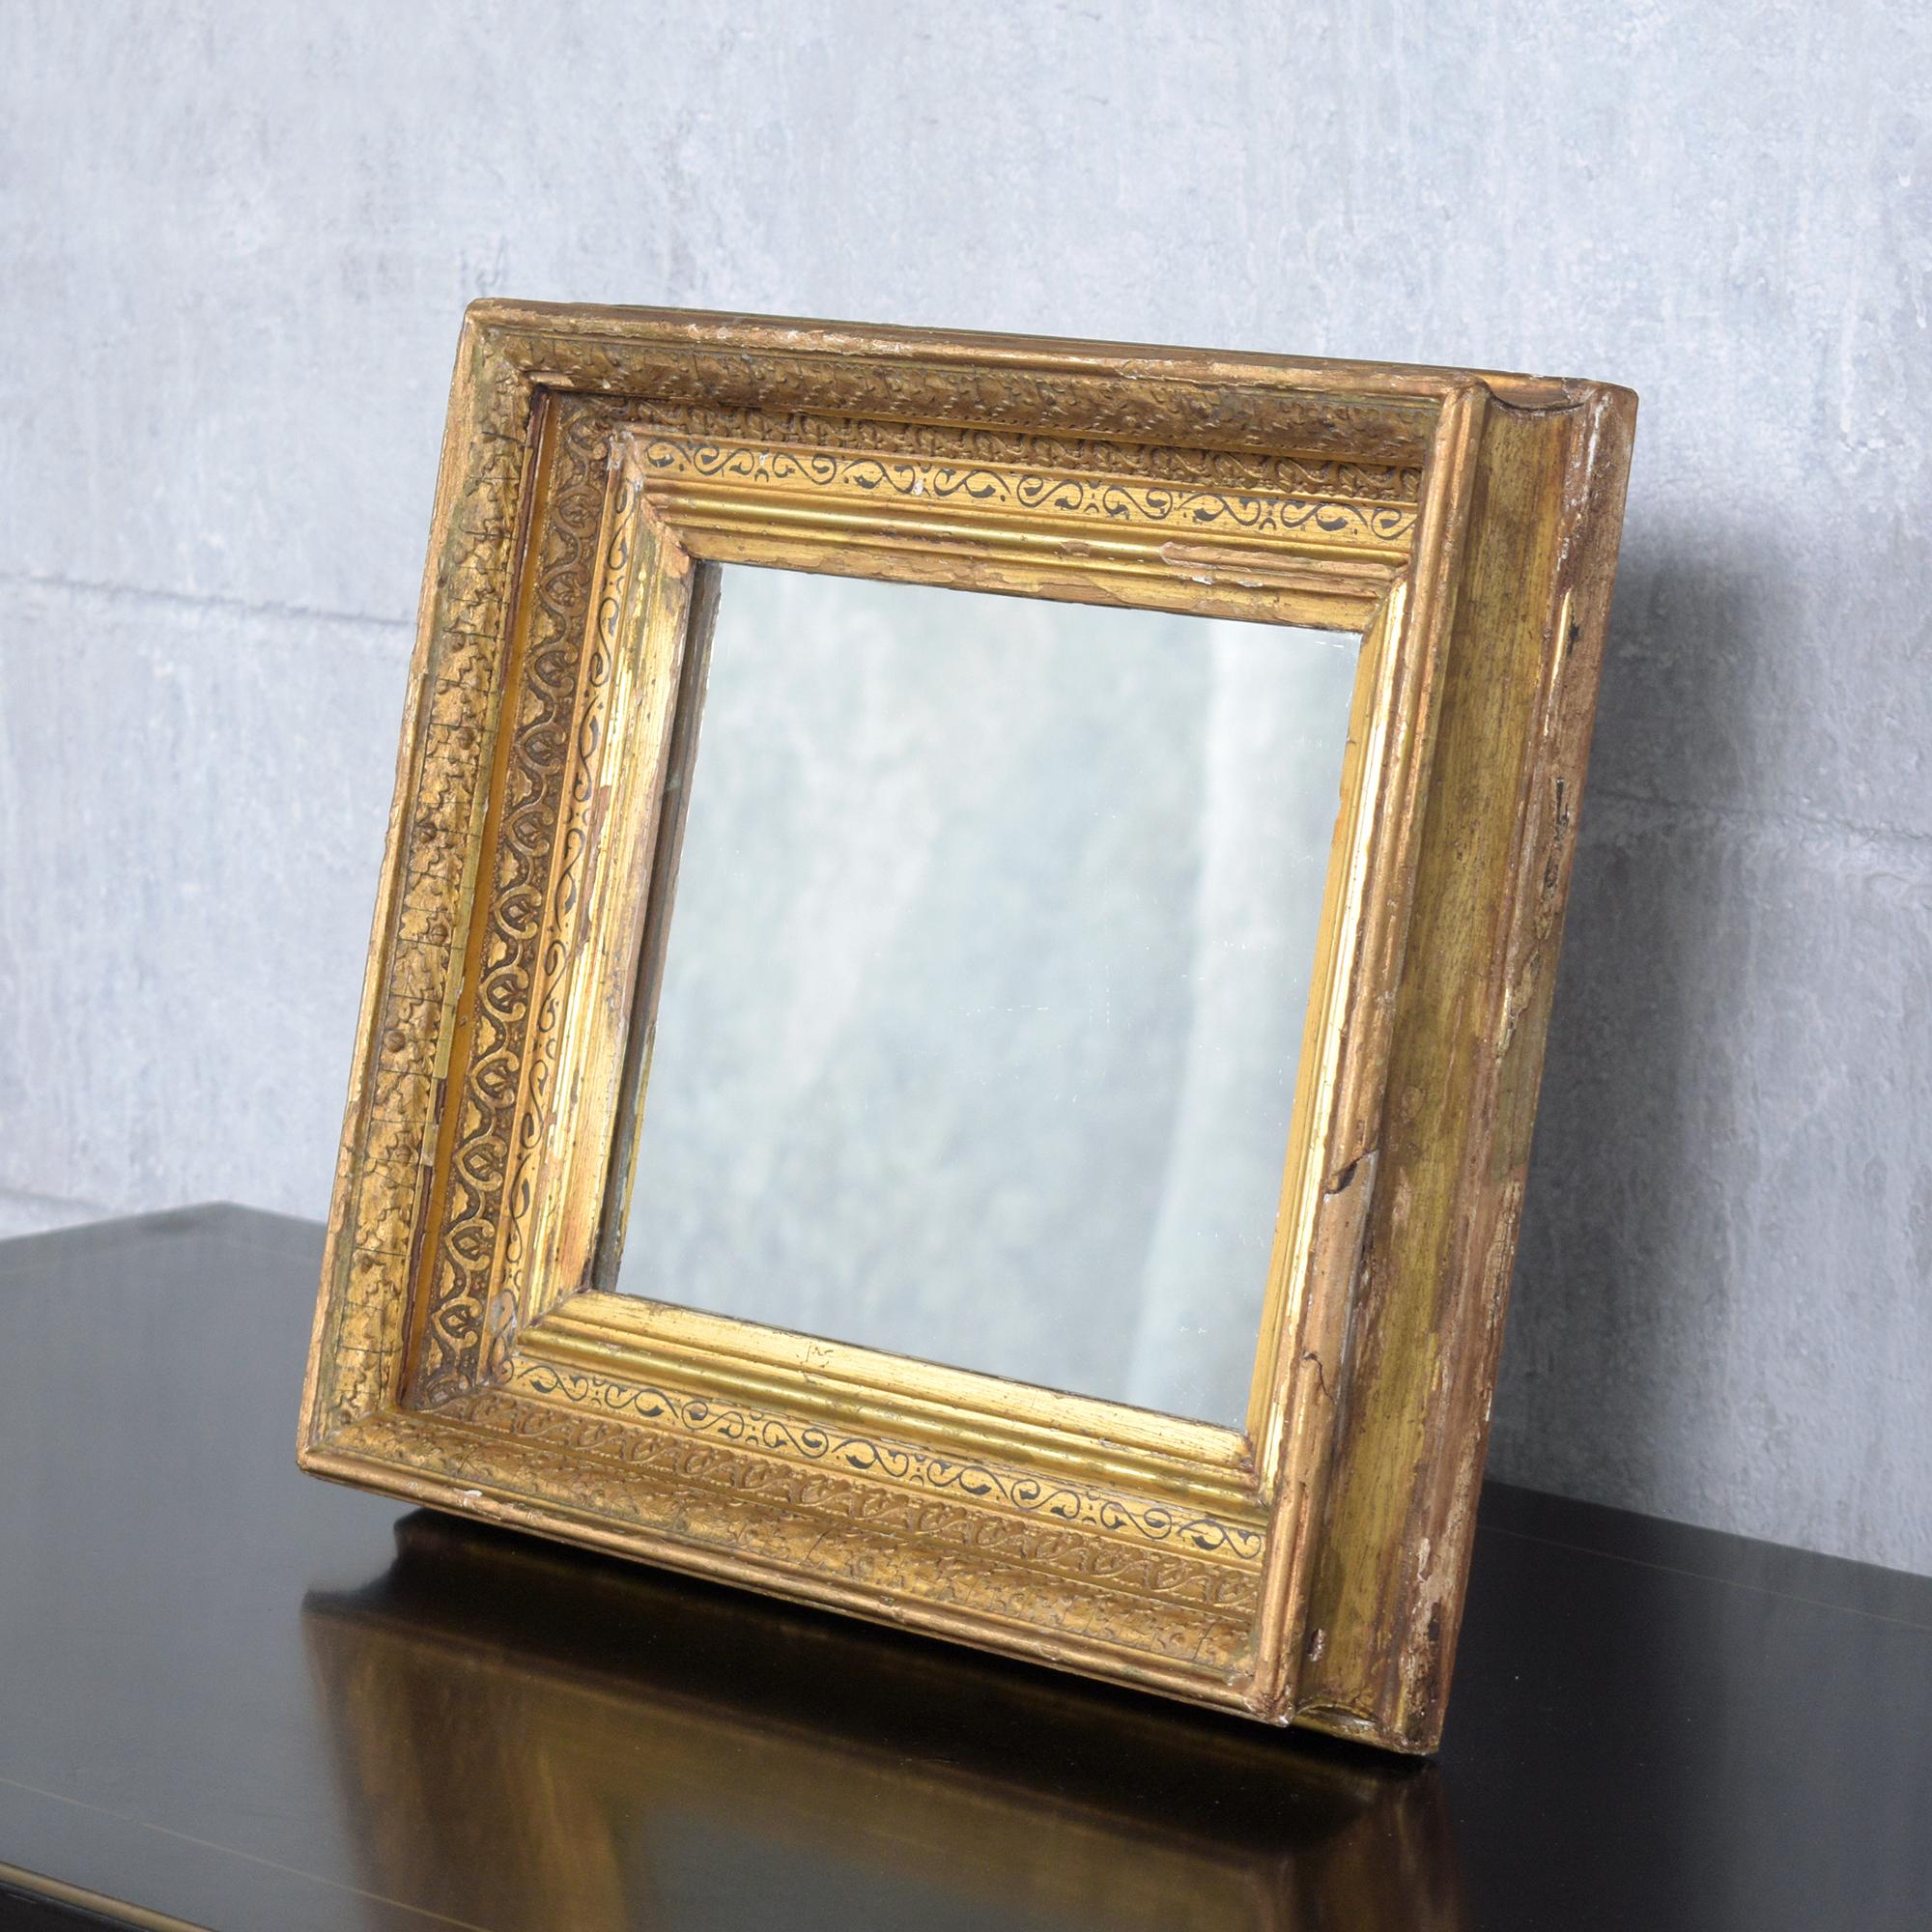 Lassen Sie sich vom Charme des 19. Jahrhunderts verzaubern mit unserem kleinen französischen Antikspiegel, einem Meisterwerk der Handwerkskunst und Eleganz. Dieser exquisite, fachmännisch aus Holz gefertigte Spiegel wurde von unserem hauseigenen